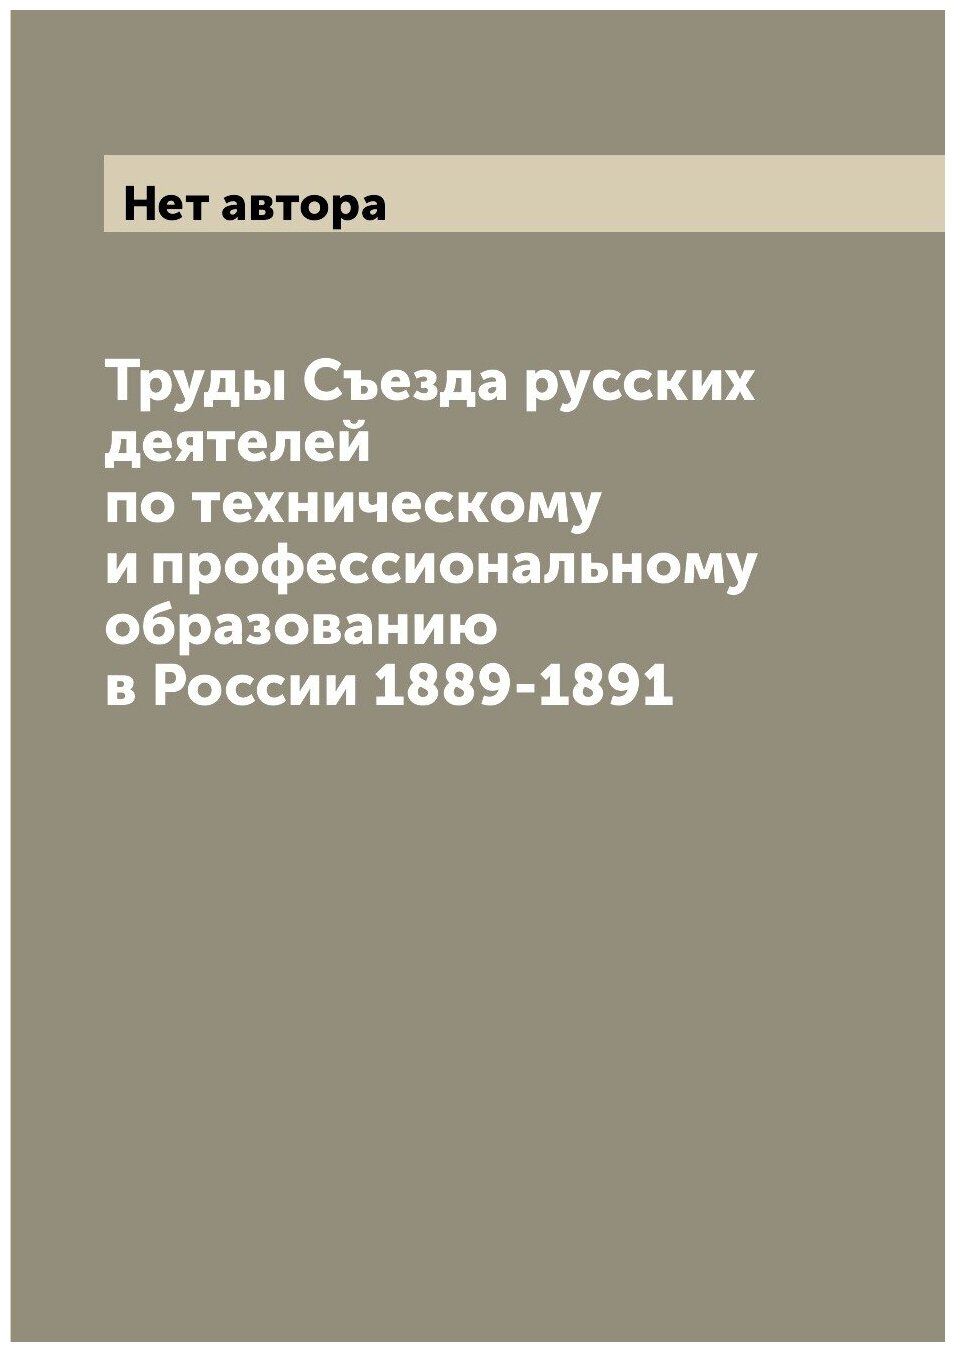 Труды Съезда русских деятелей по техническому и профессиональному образованию в России 1889-1891